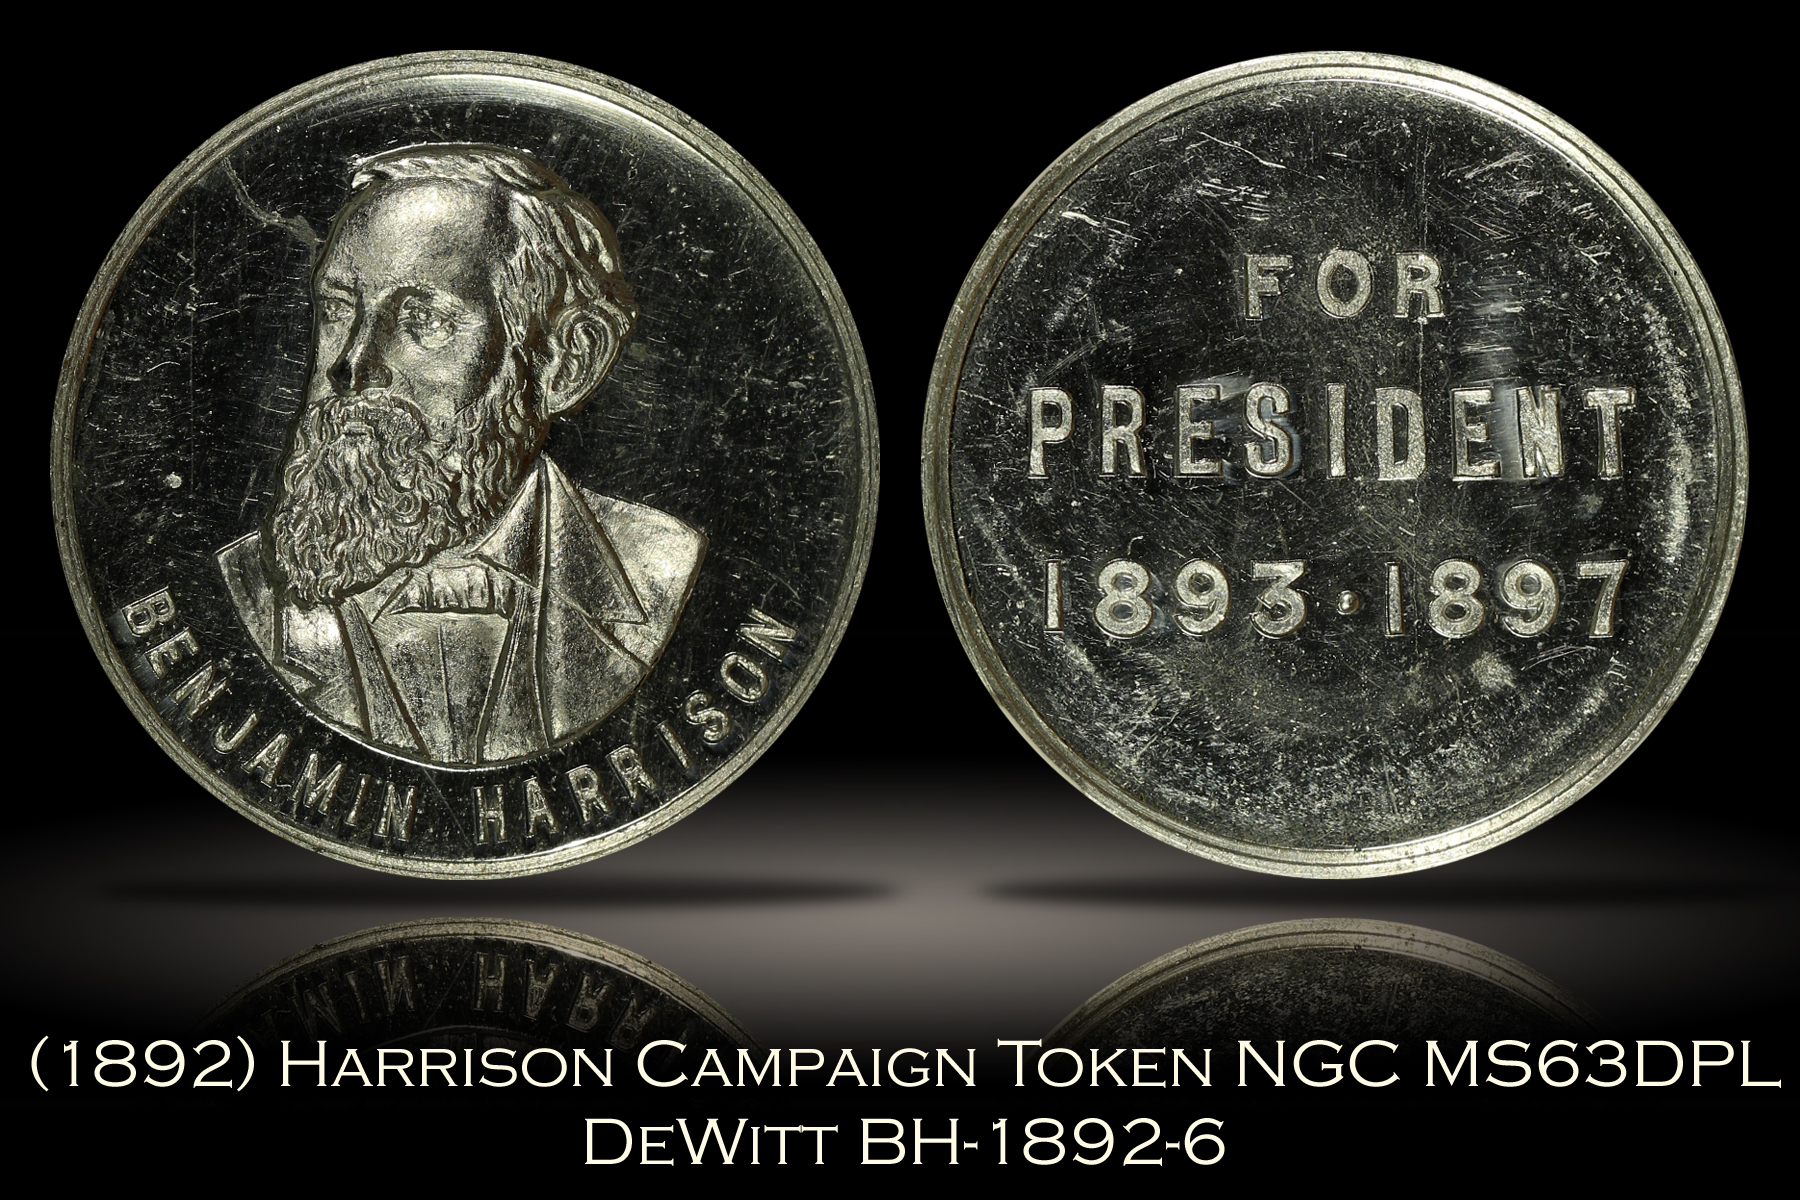 1892 Benjamin Harrison Campaign Token DeWitt BH-1892-6 NGC MS63DPL